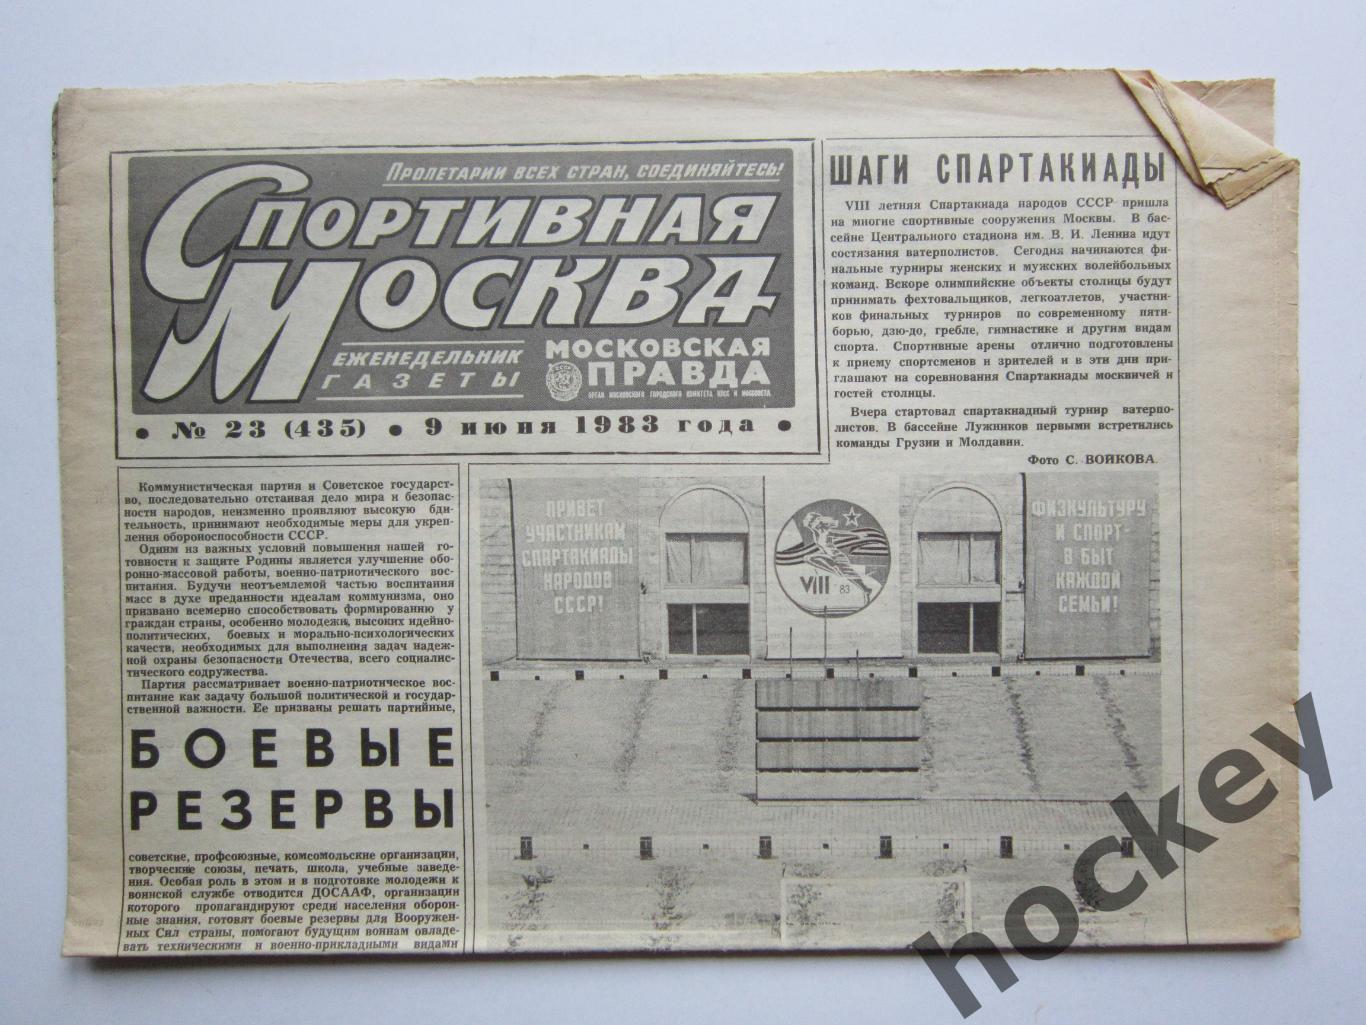 Спортивная Москва № 23 (435). 9.06.1983